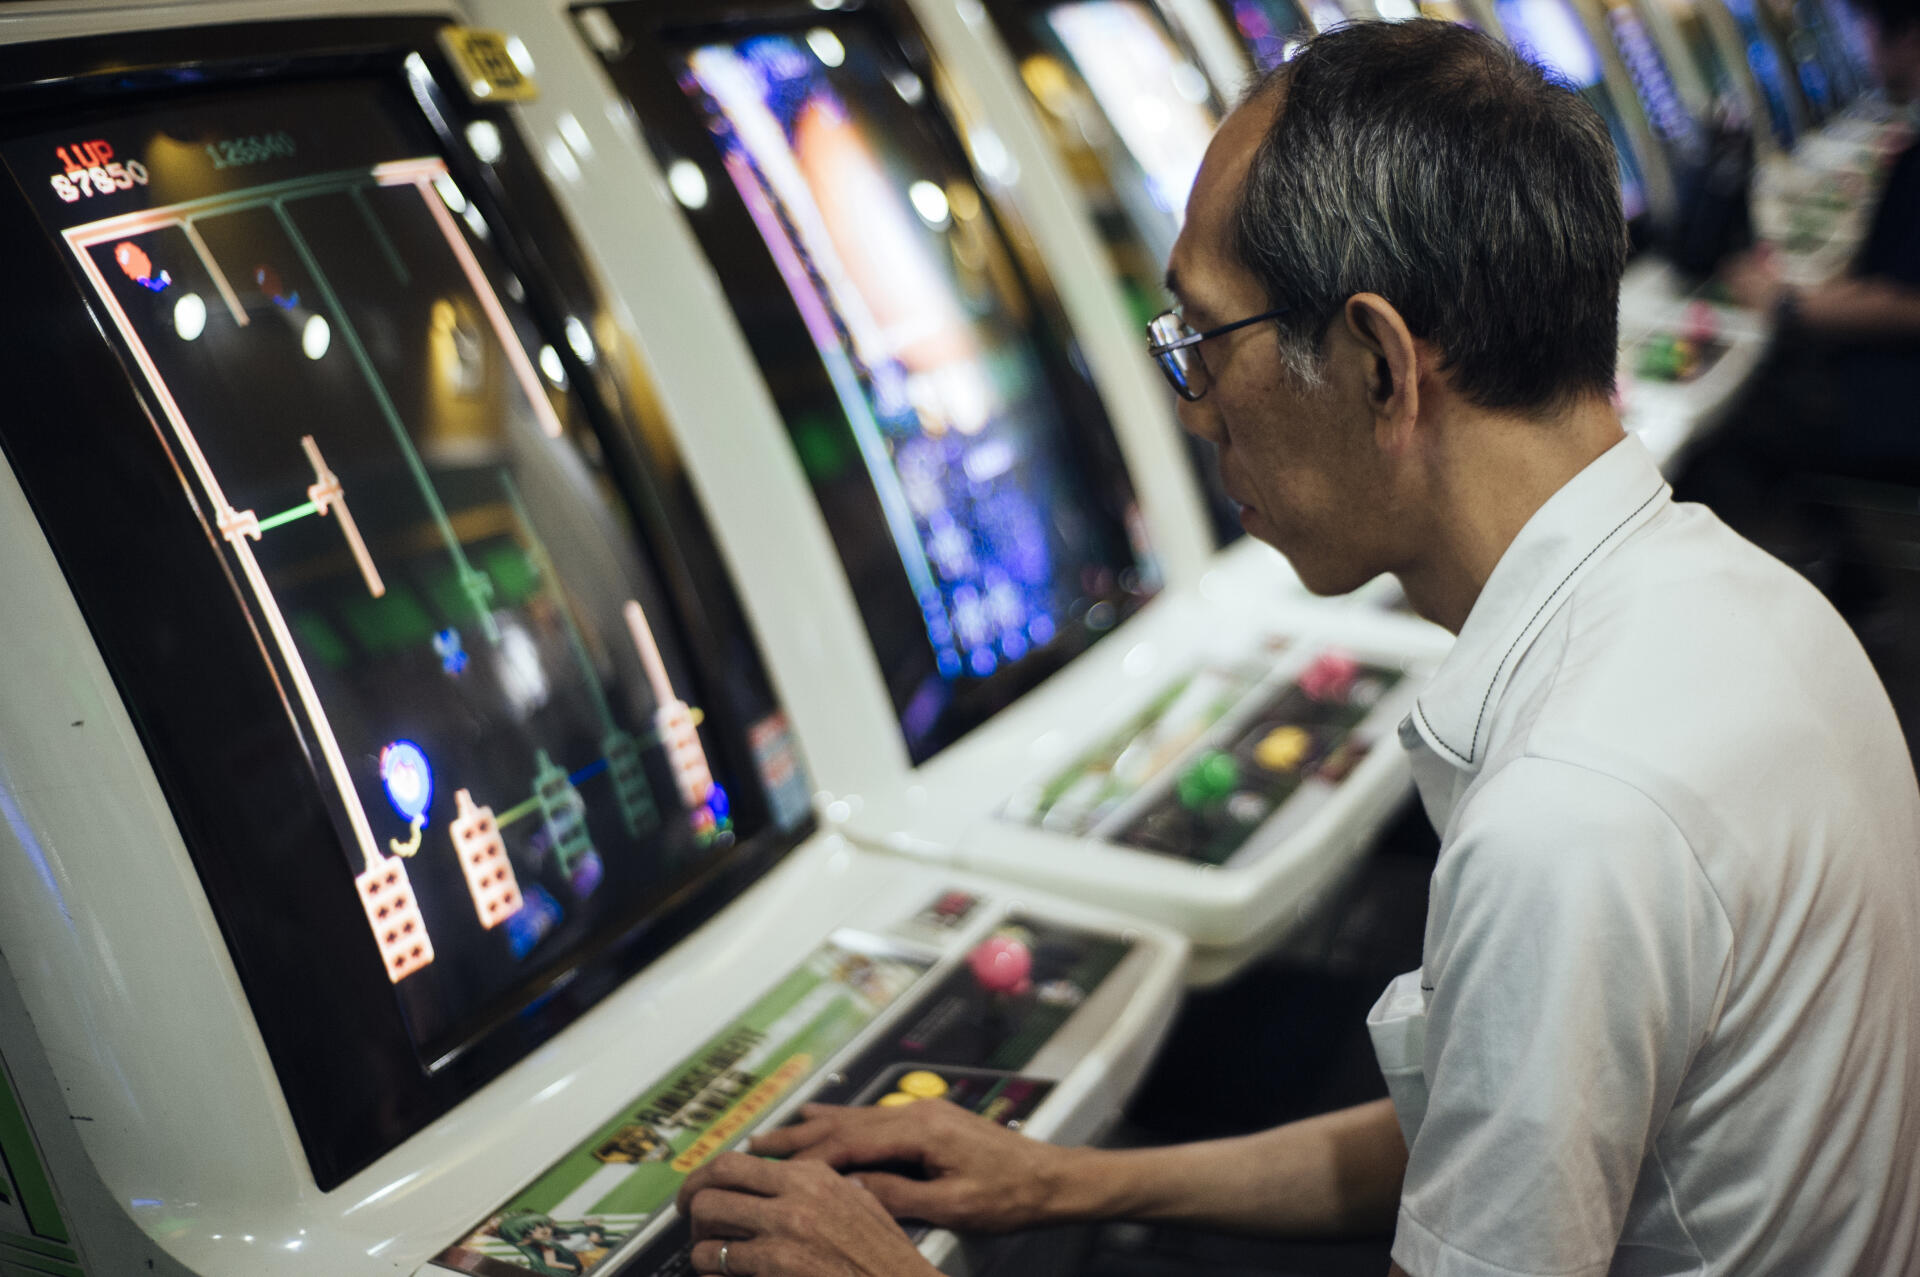 Oubliés des jeunes générations, les vieux jeux vidéo, disponibles dans certaines salles d'Akibahara, attirent des Japonais nostalgiques.